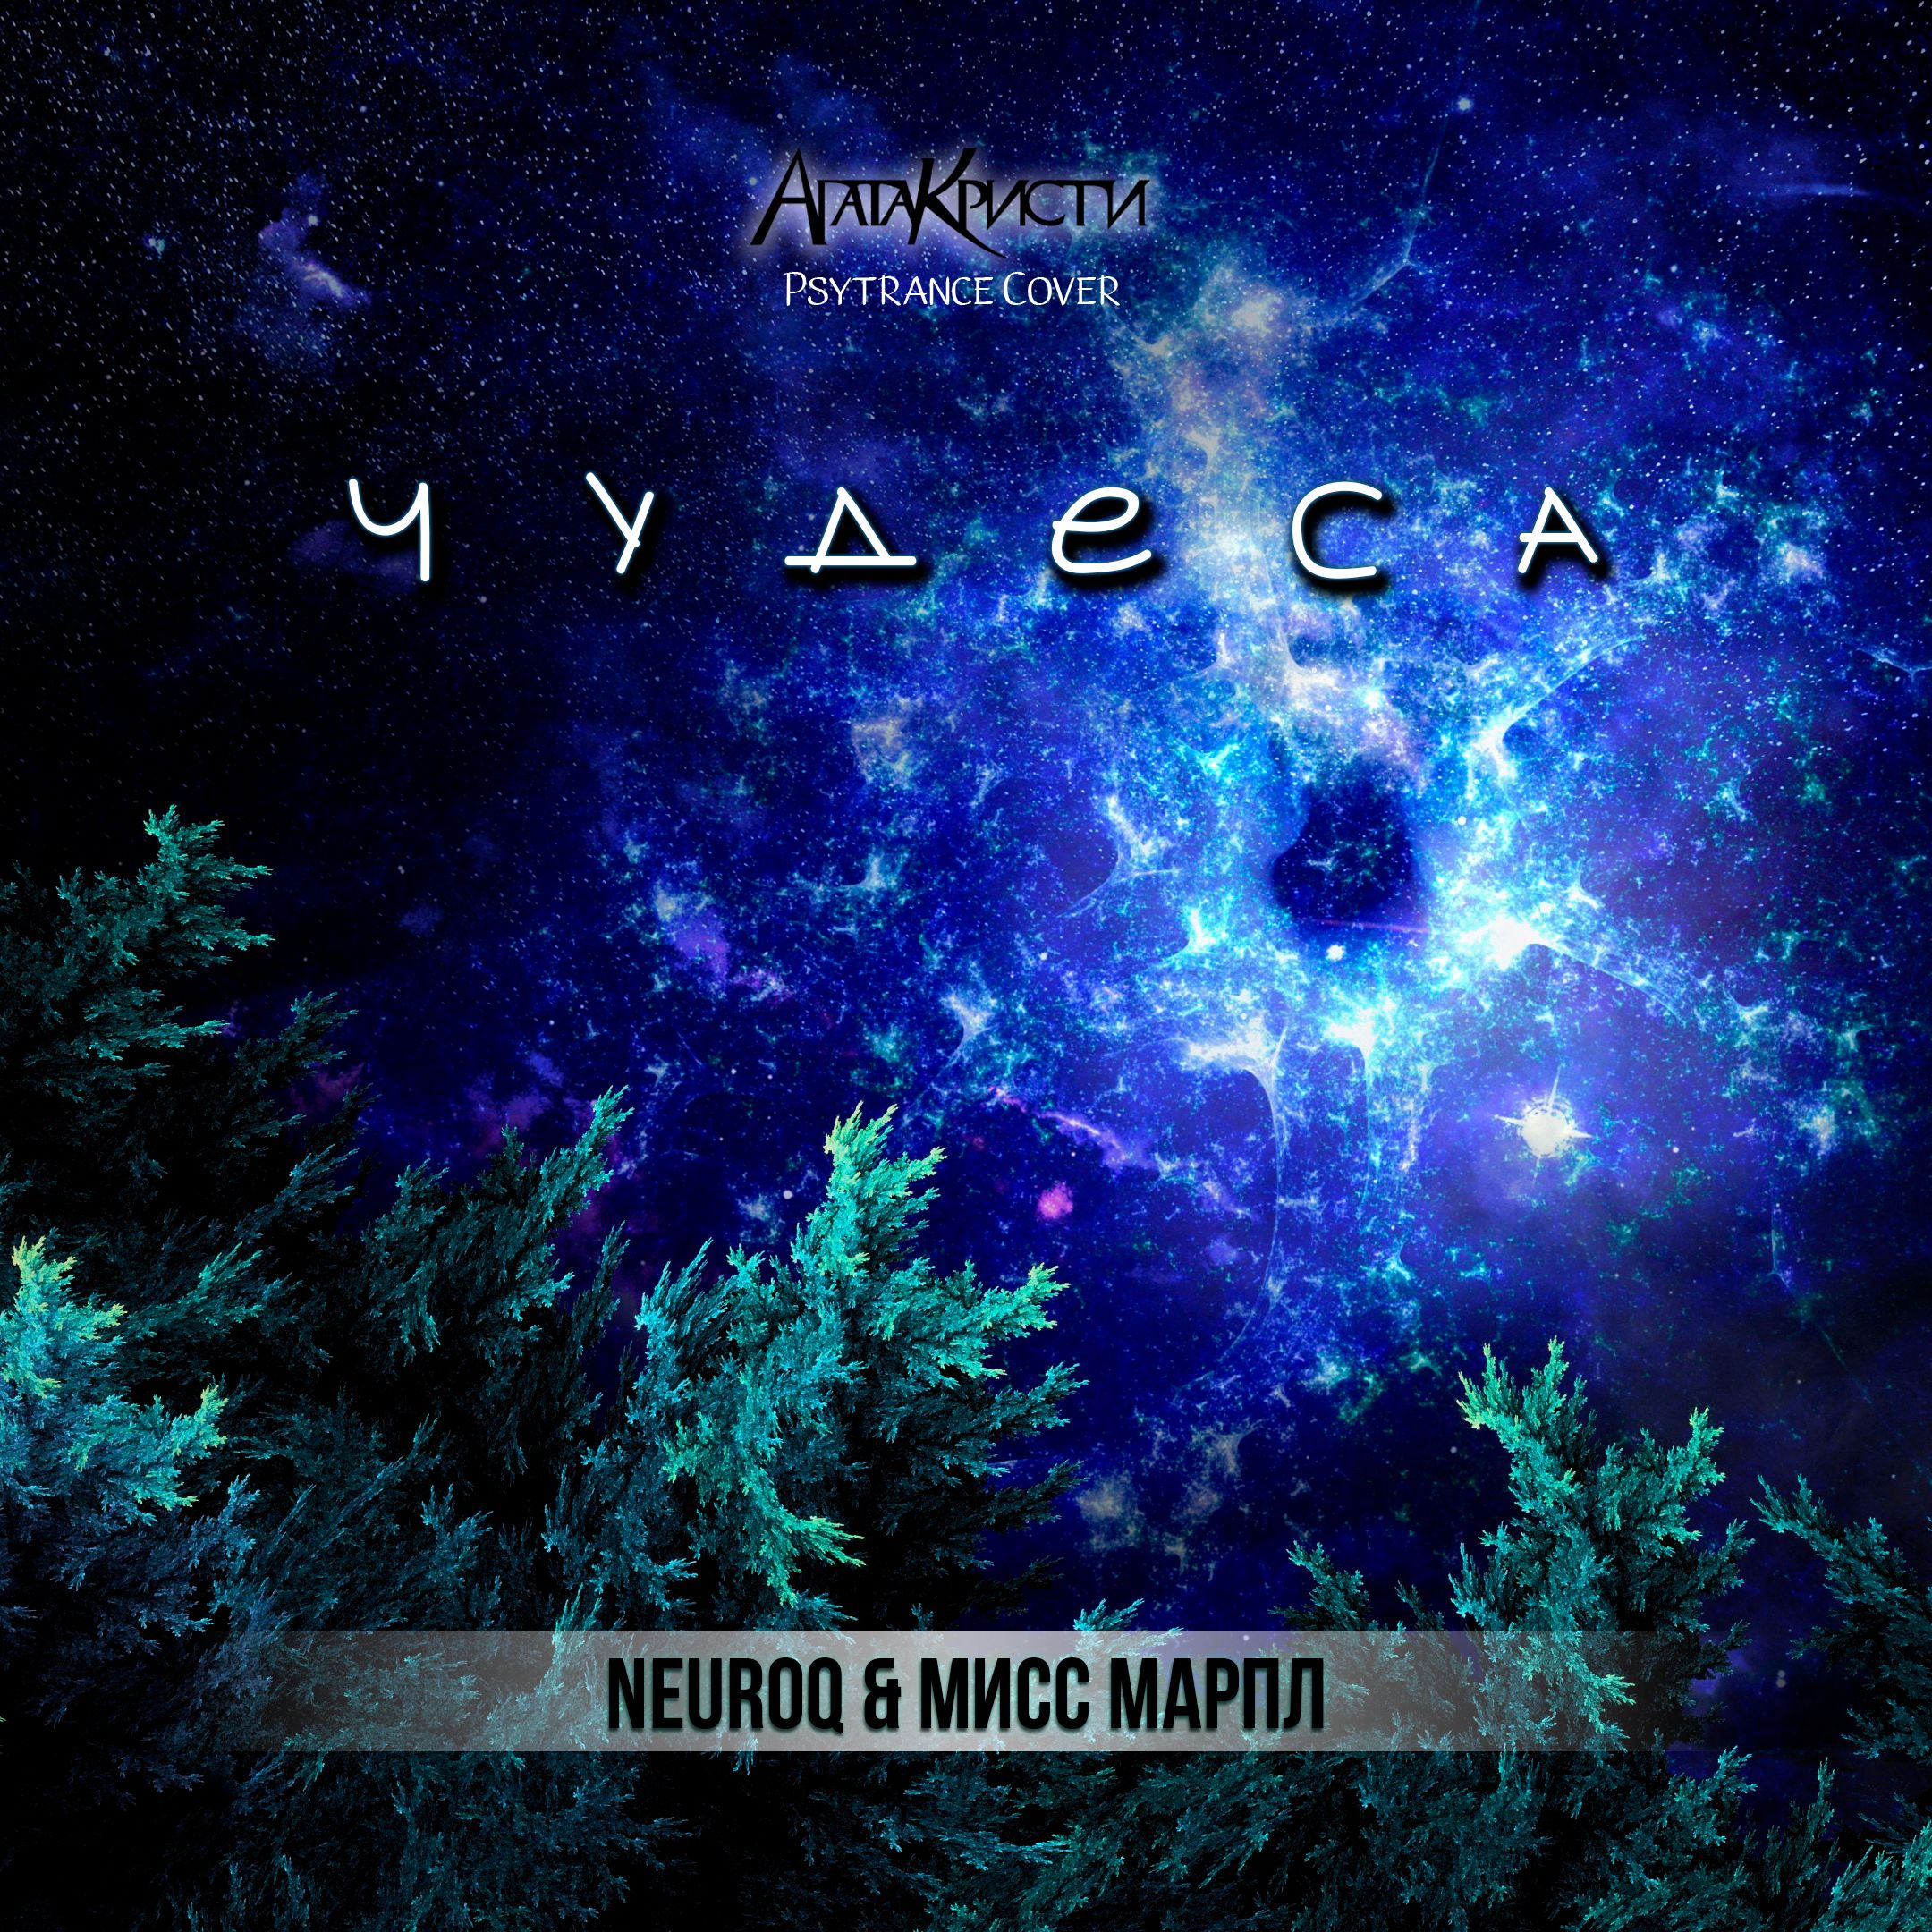 Download Neuroq & Мисс Марпл - Чудеса (Агата Кристи Psytrance Cover)